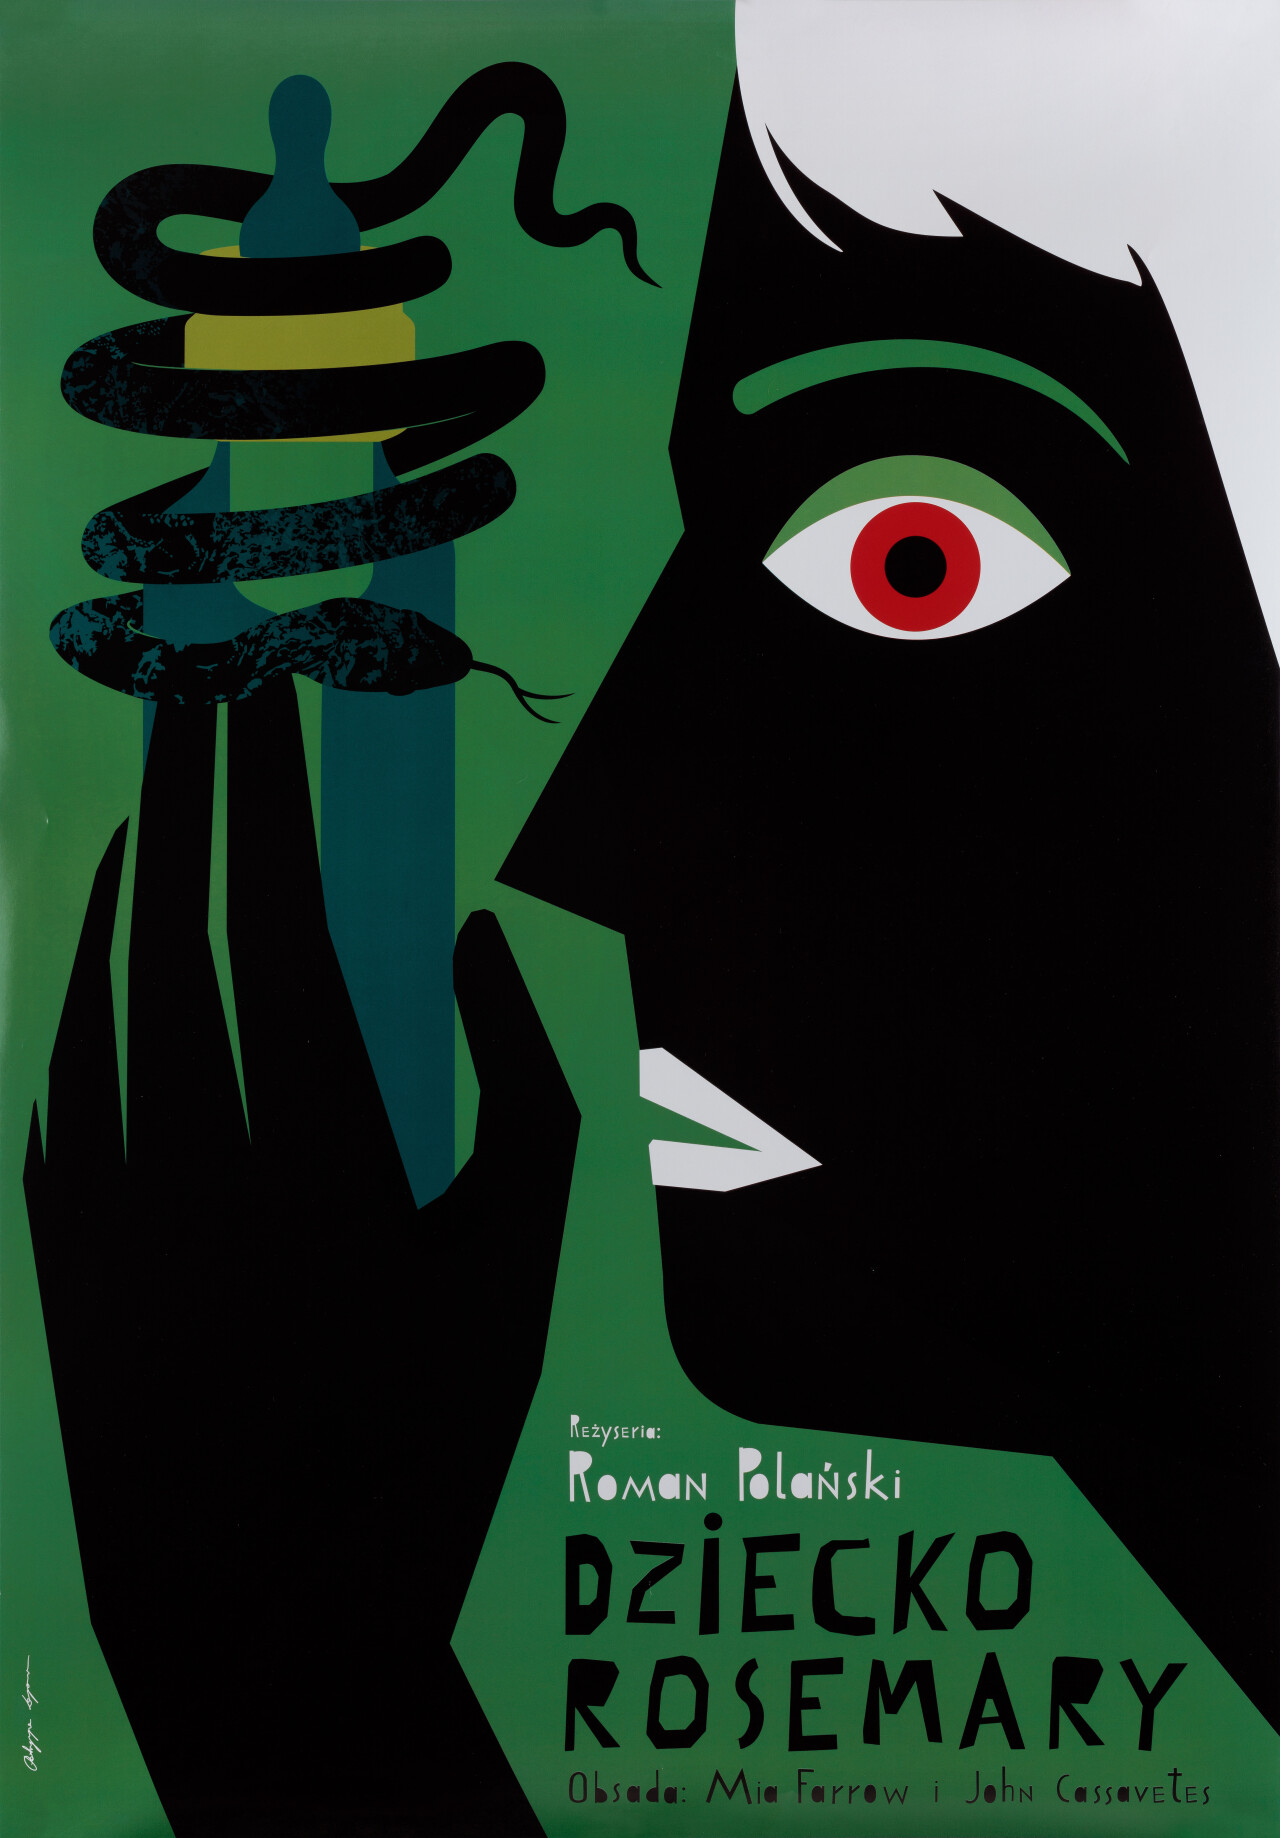 Ребенок Розмари (Rosemarys Baby, 1968), режиссёр Роман Полански, польский постер к фильму, автор Патриция Лонгава (графический дизайн, 2019 год)